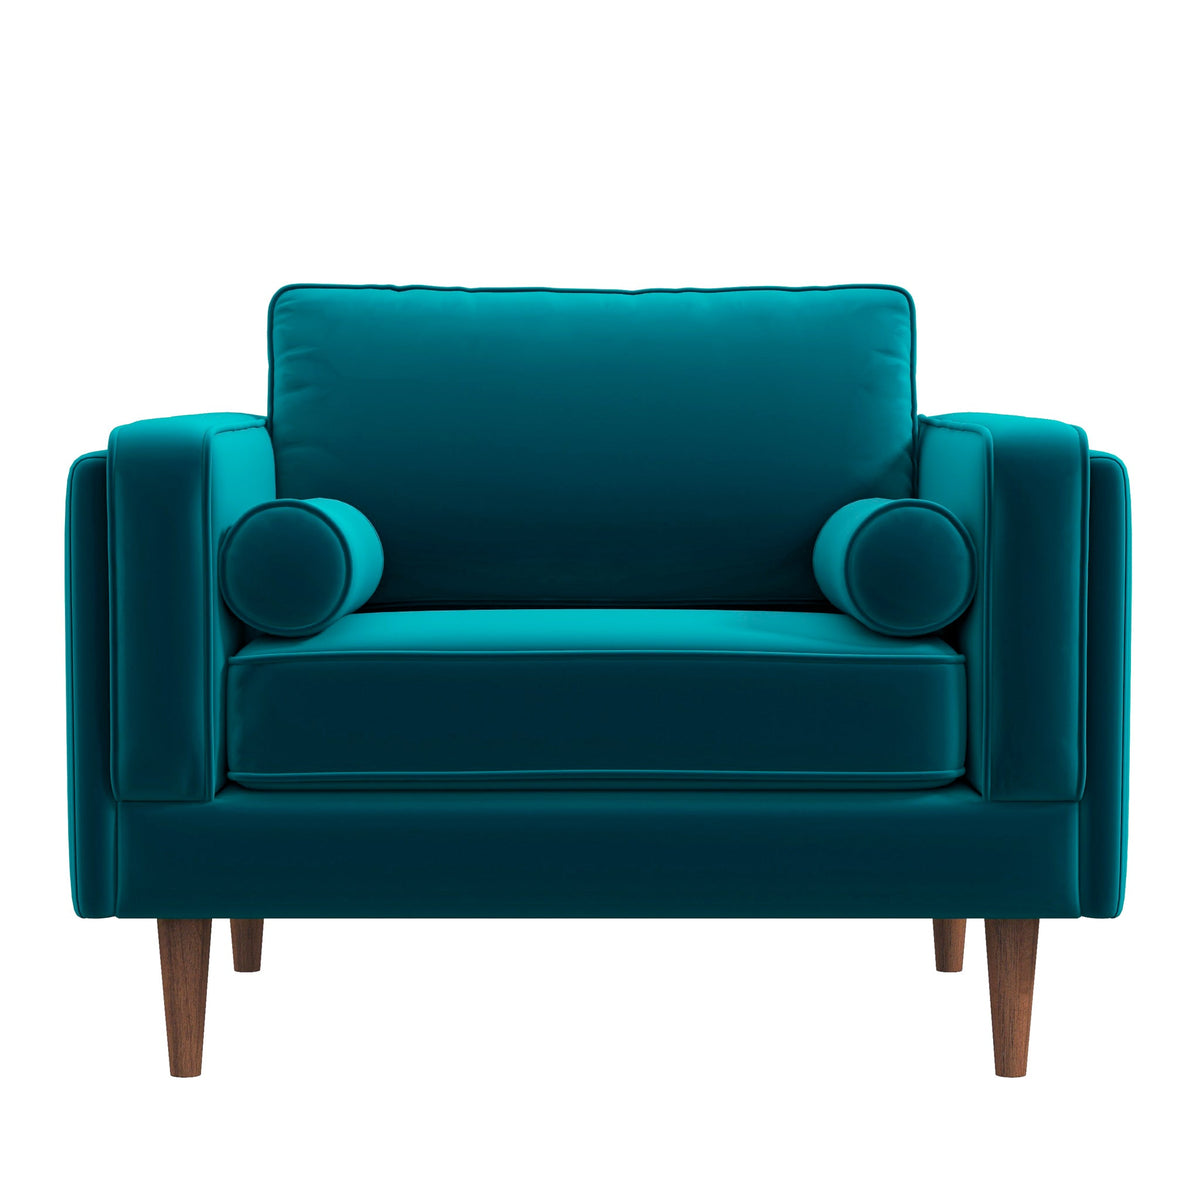 Fordham Lounge Chair - Teal Velvet | MidinMod | Houston TX | Best Furniture stores in Houston